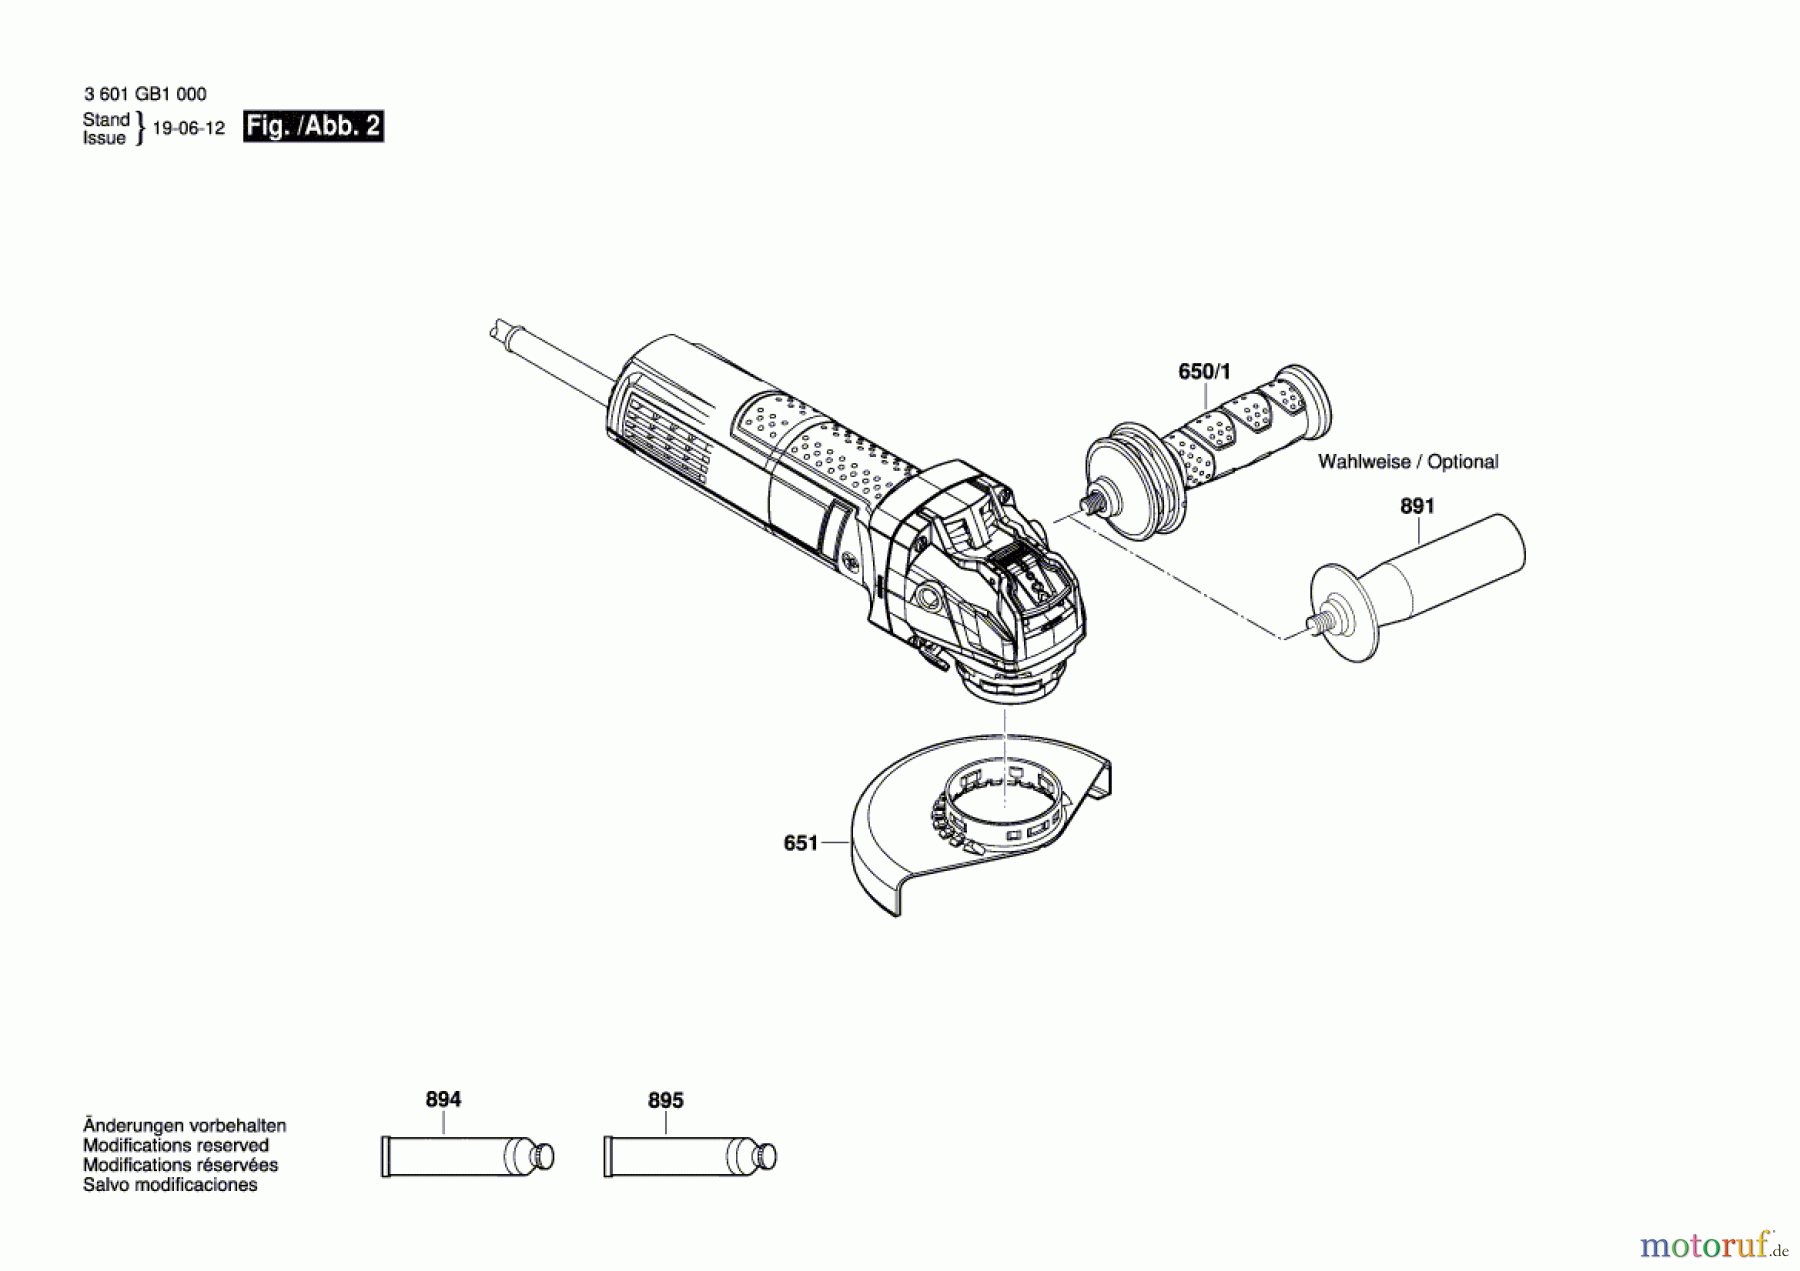  Bosch Werkzeug Winkelschleifer GWX 9-125 S Seite 2